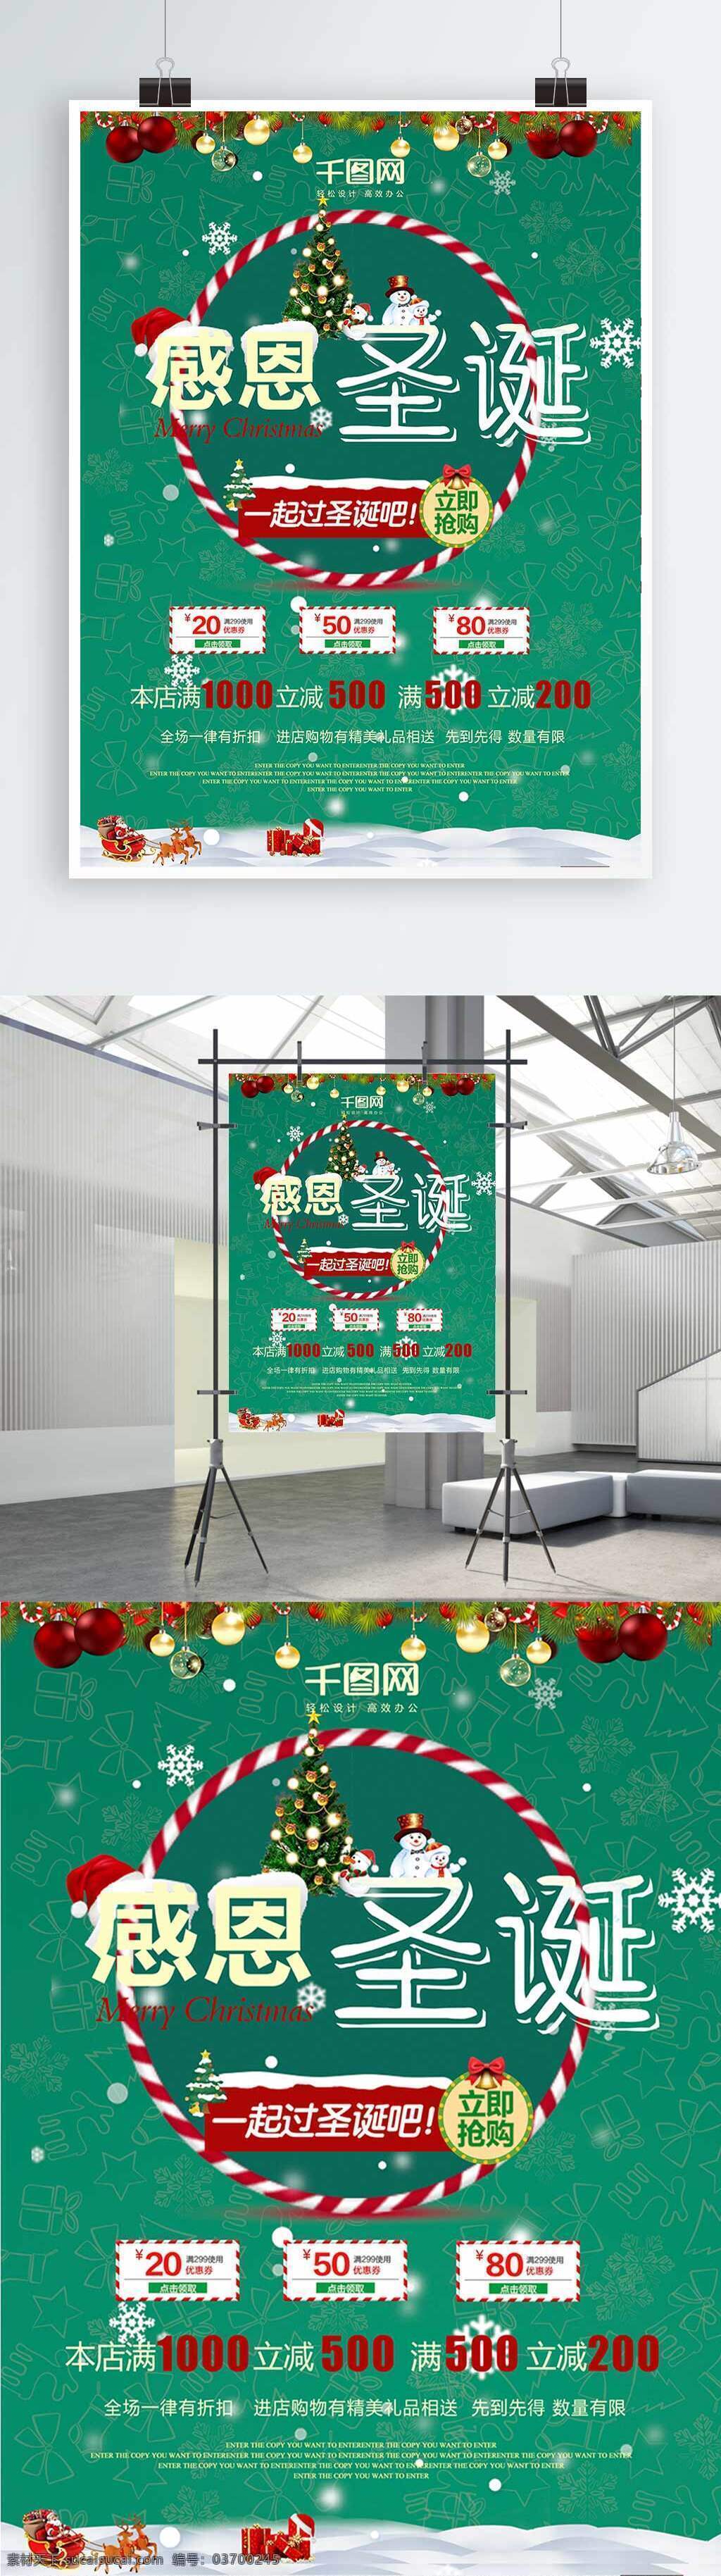 绿色 时尚 简约 雪花 水晶球 圣诞 节日 活动 促销 圣诞节日 活动促销